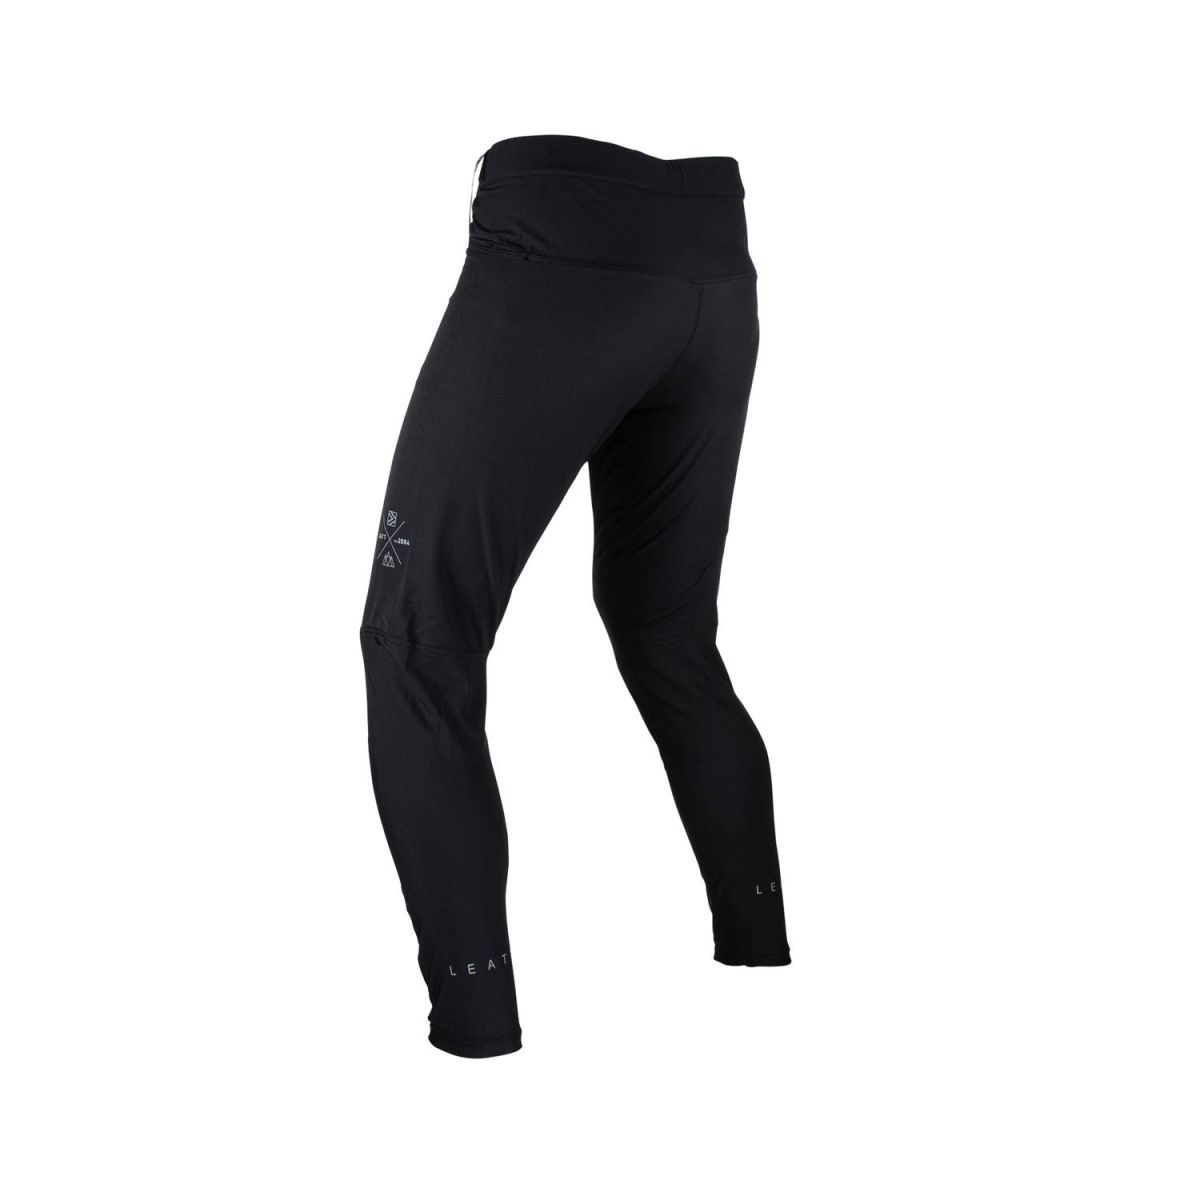 Pantalón largo de bicicleta Leatt MTB Trail 2.0 con culotte interior incluido con badana en color negro